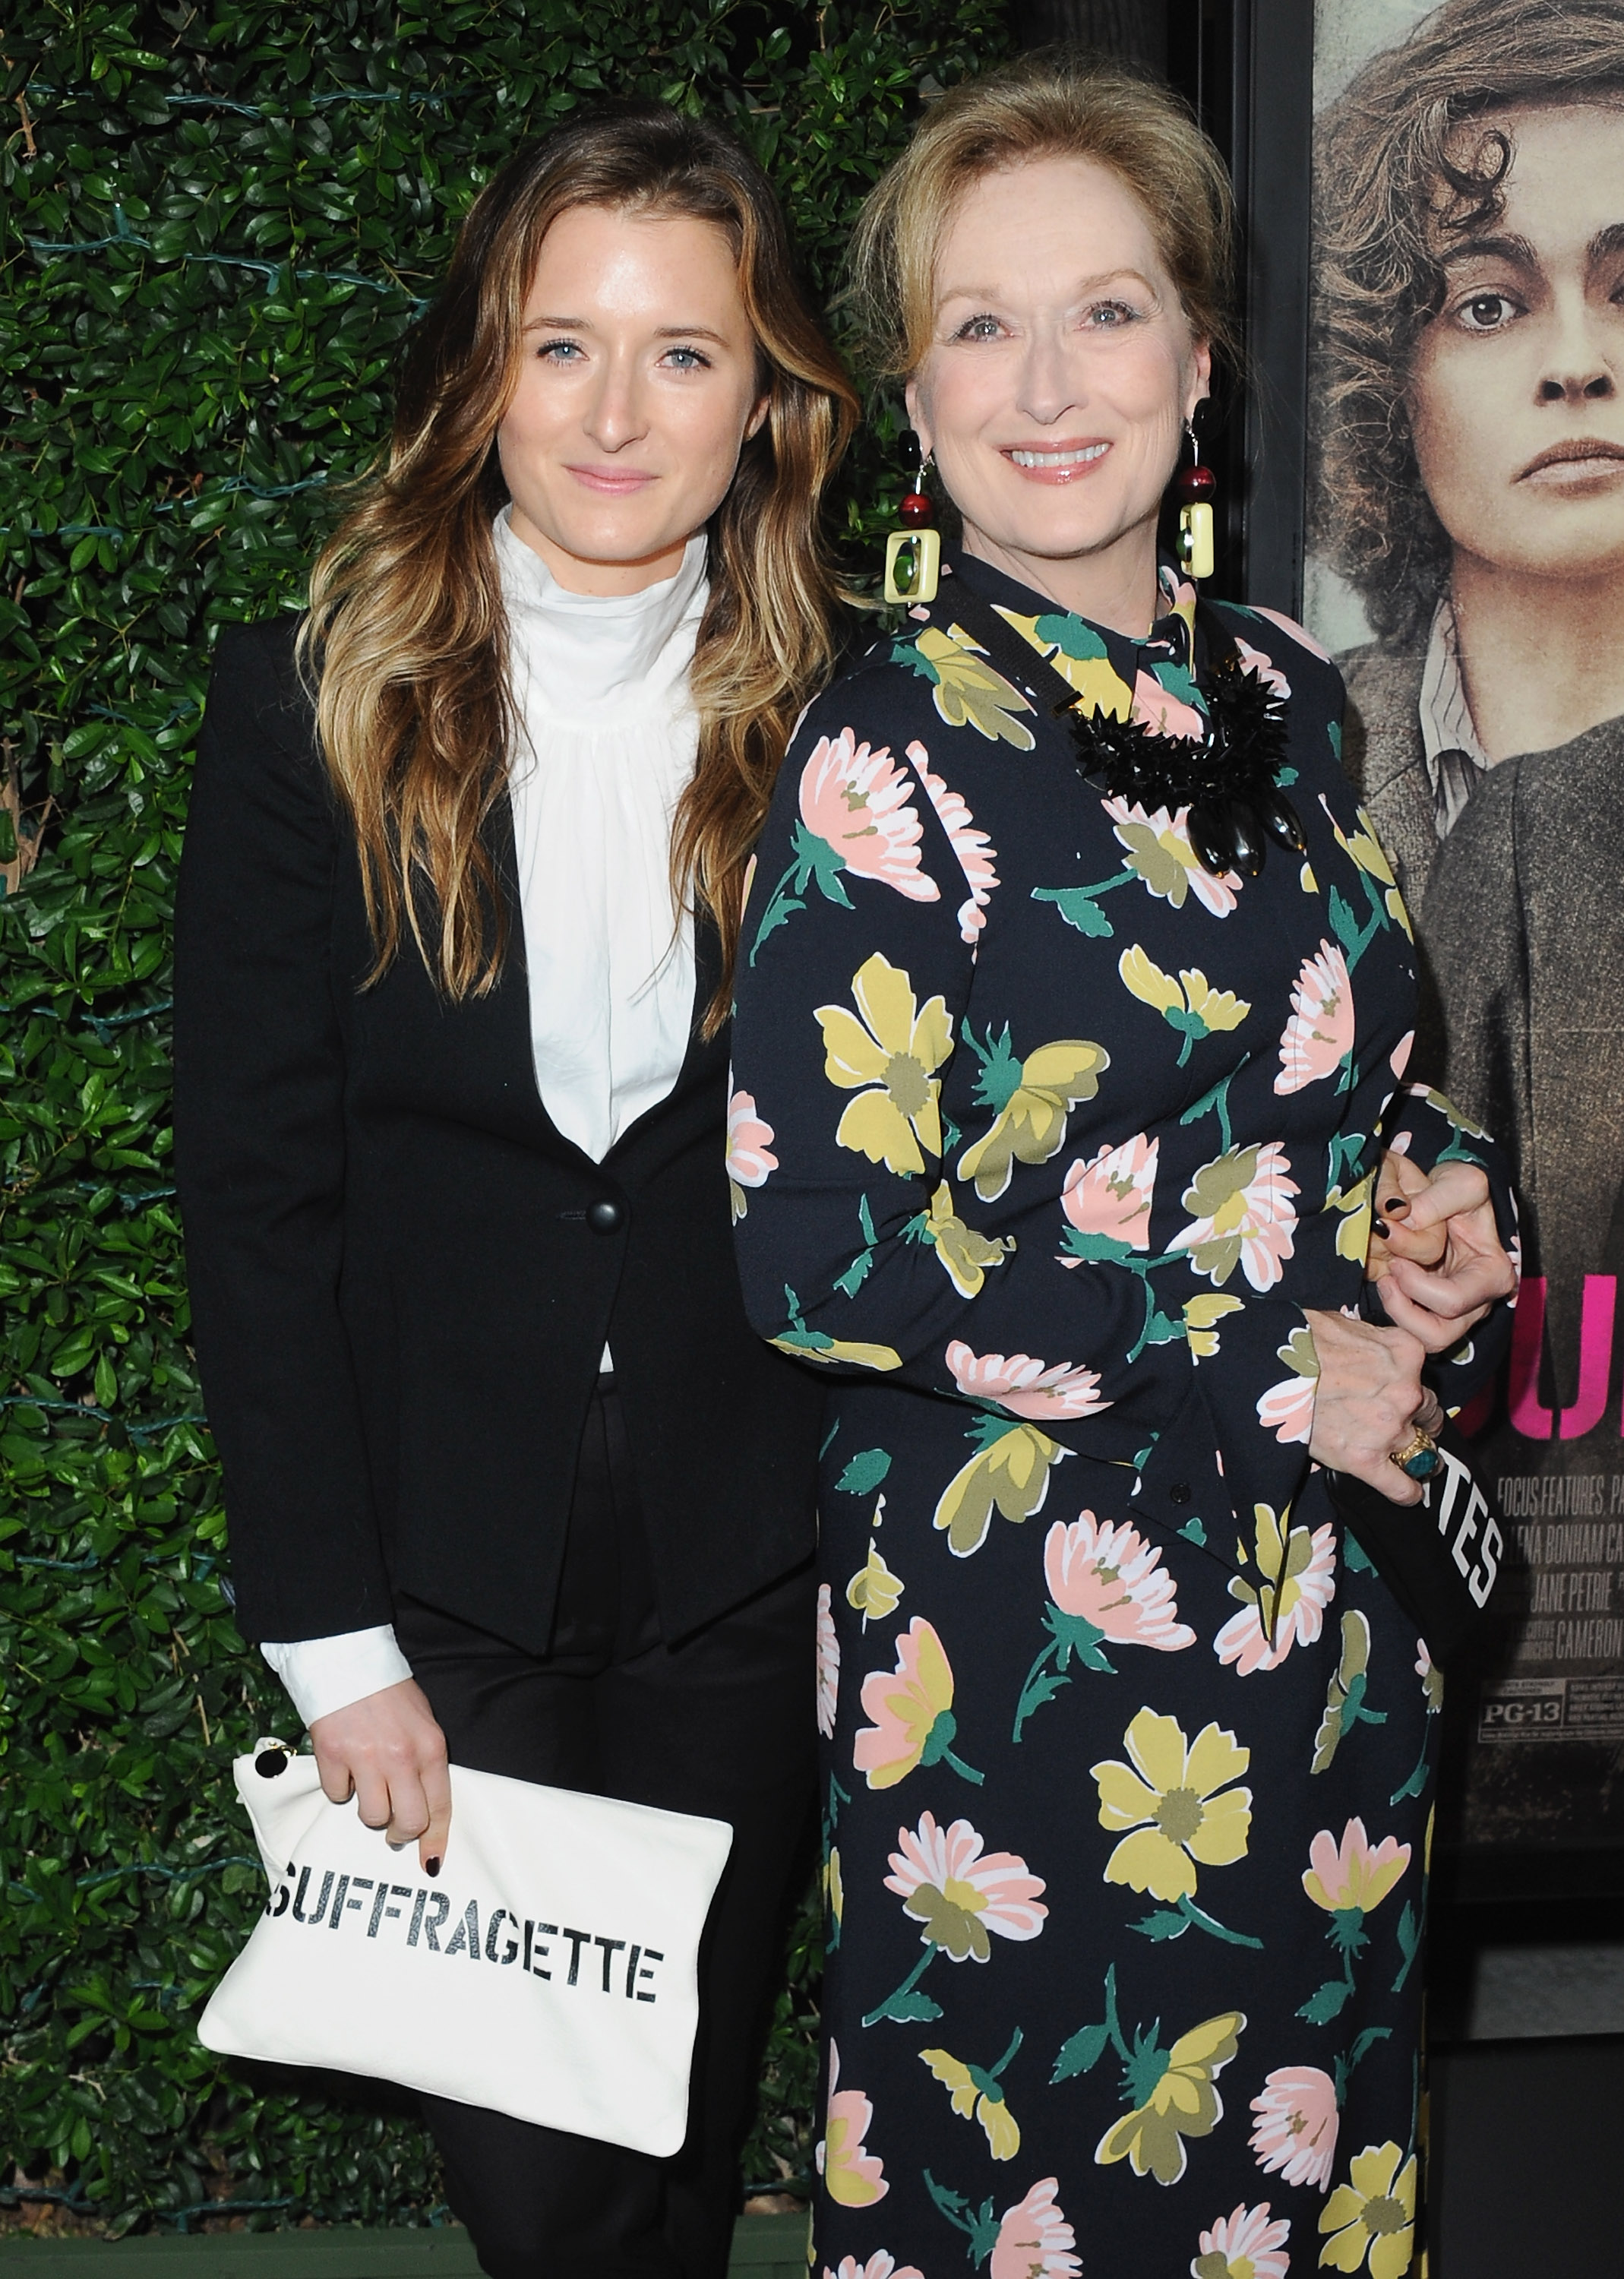 Grace Gummer et Meryl Streep lors de la première de "Suffragette" le 20 octobre 2015 à Beverly Hills, Californie | Source : Getty Images